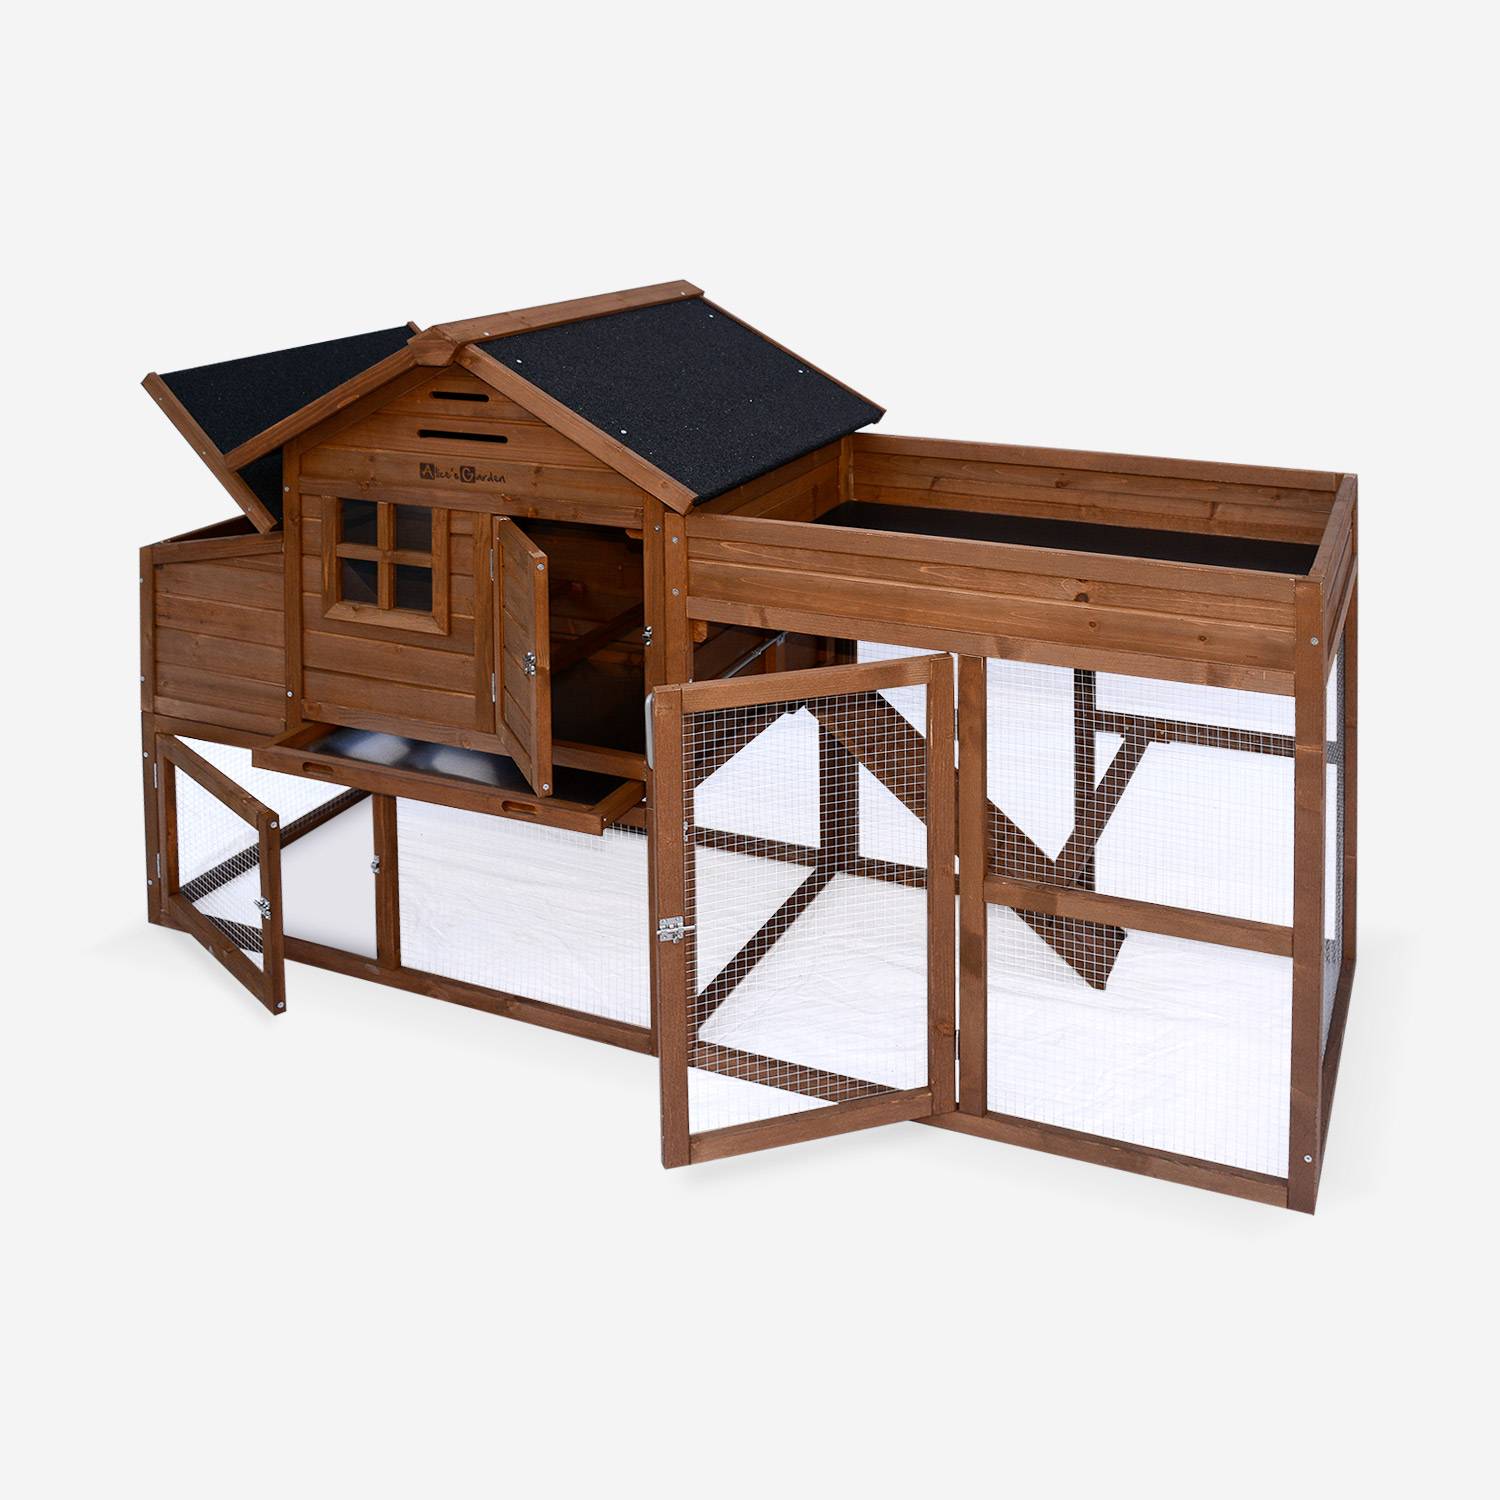 Gallinero de madera con huerto CAMPINO, 3 gallinas, caseta para gallinas con recinto Photo2